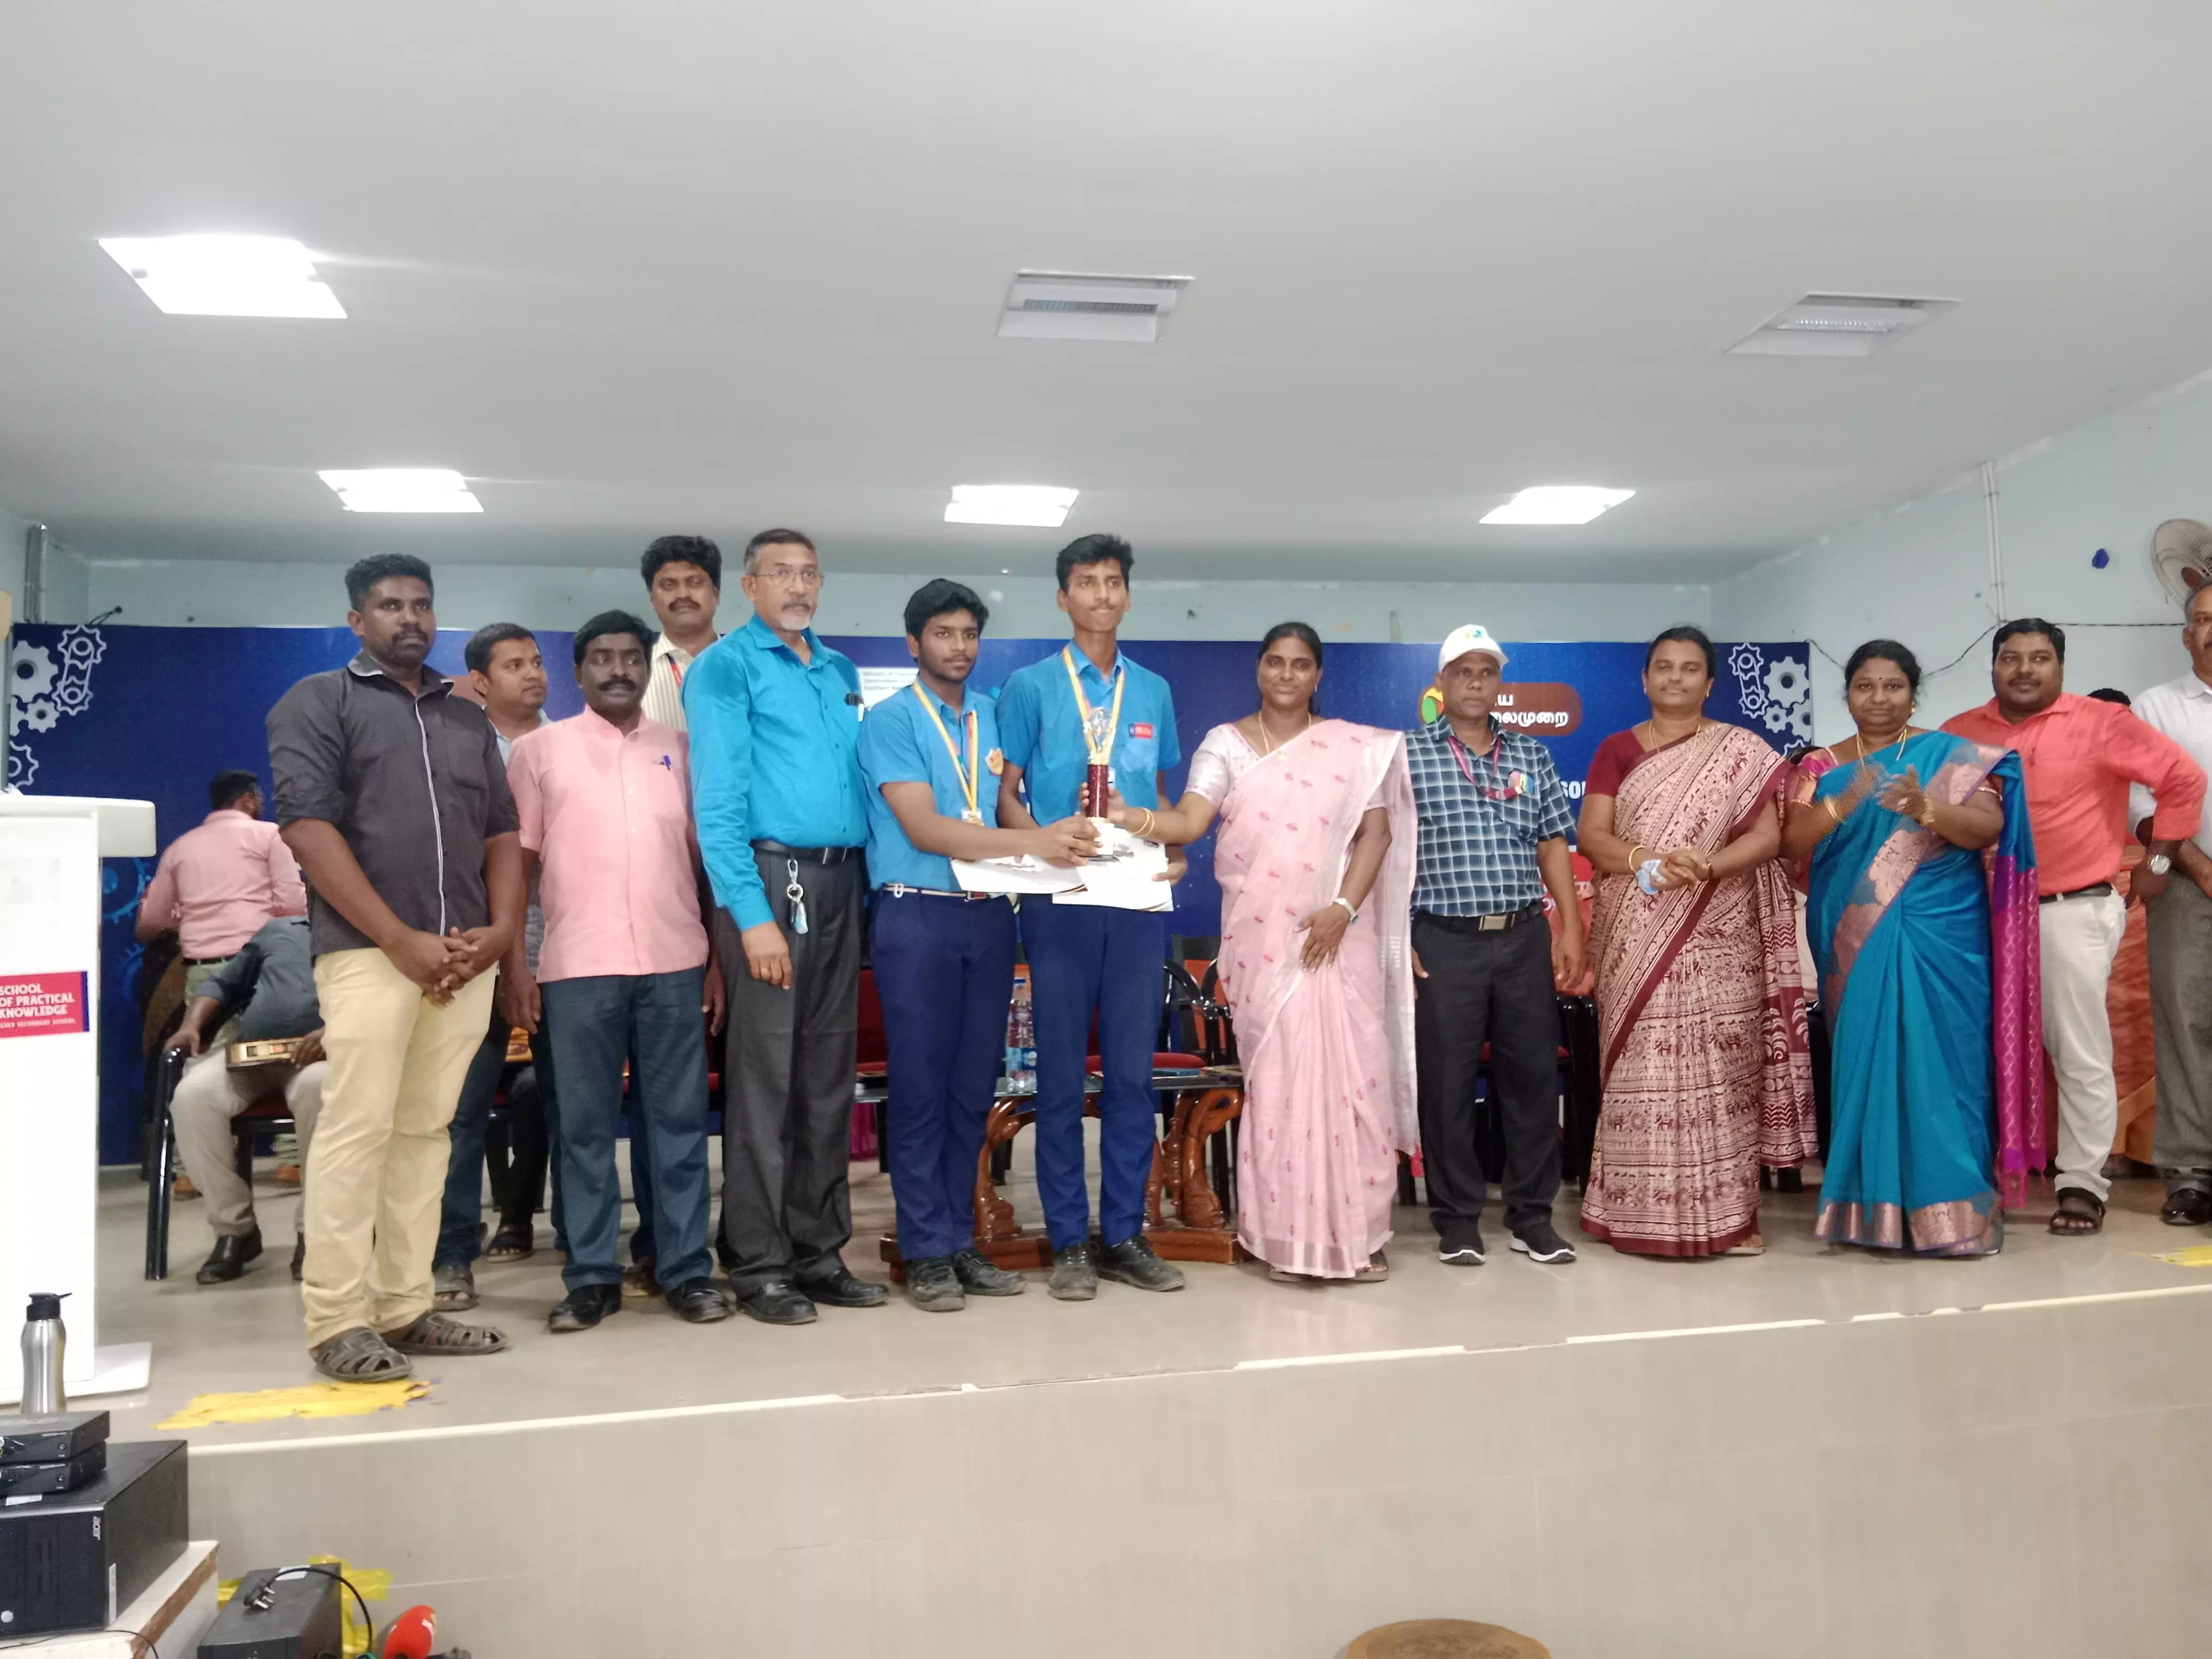 Winners of Cuddalore edition of Veettukku Oru Vignani